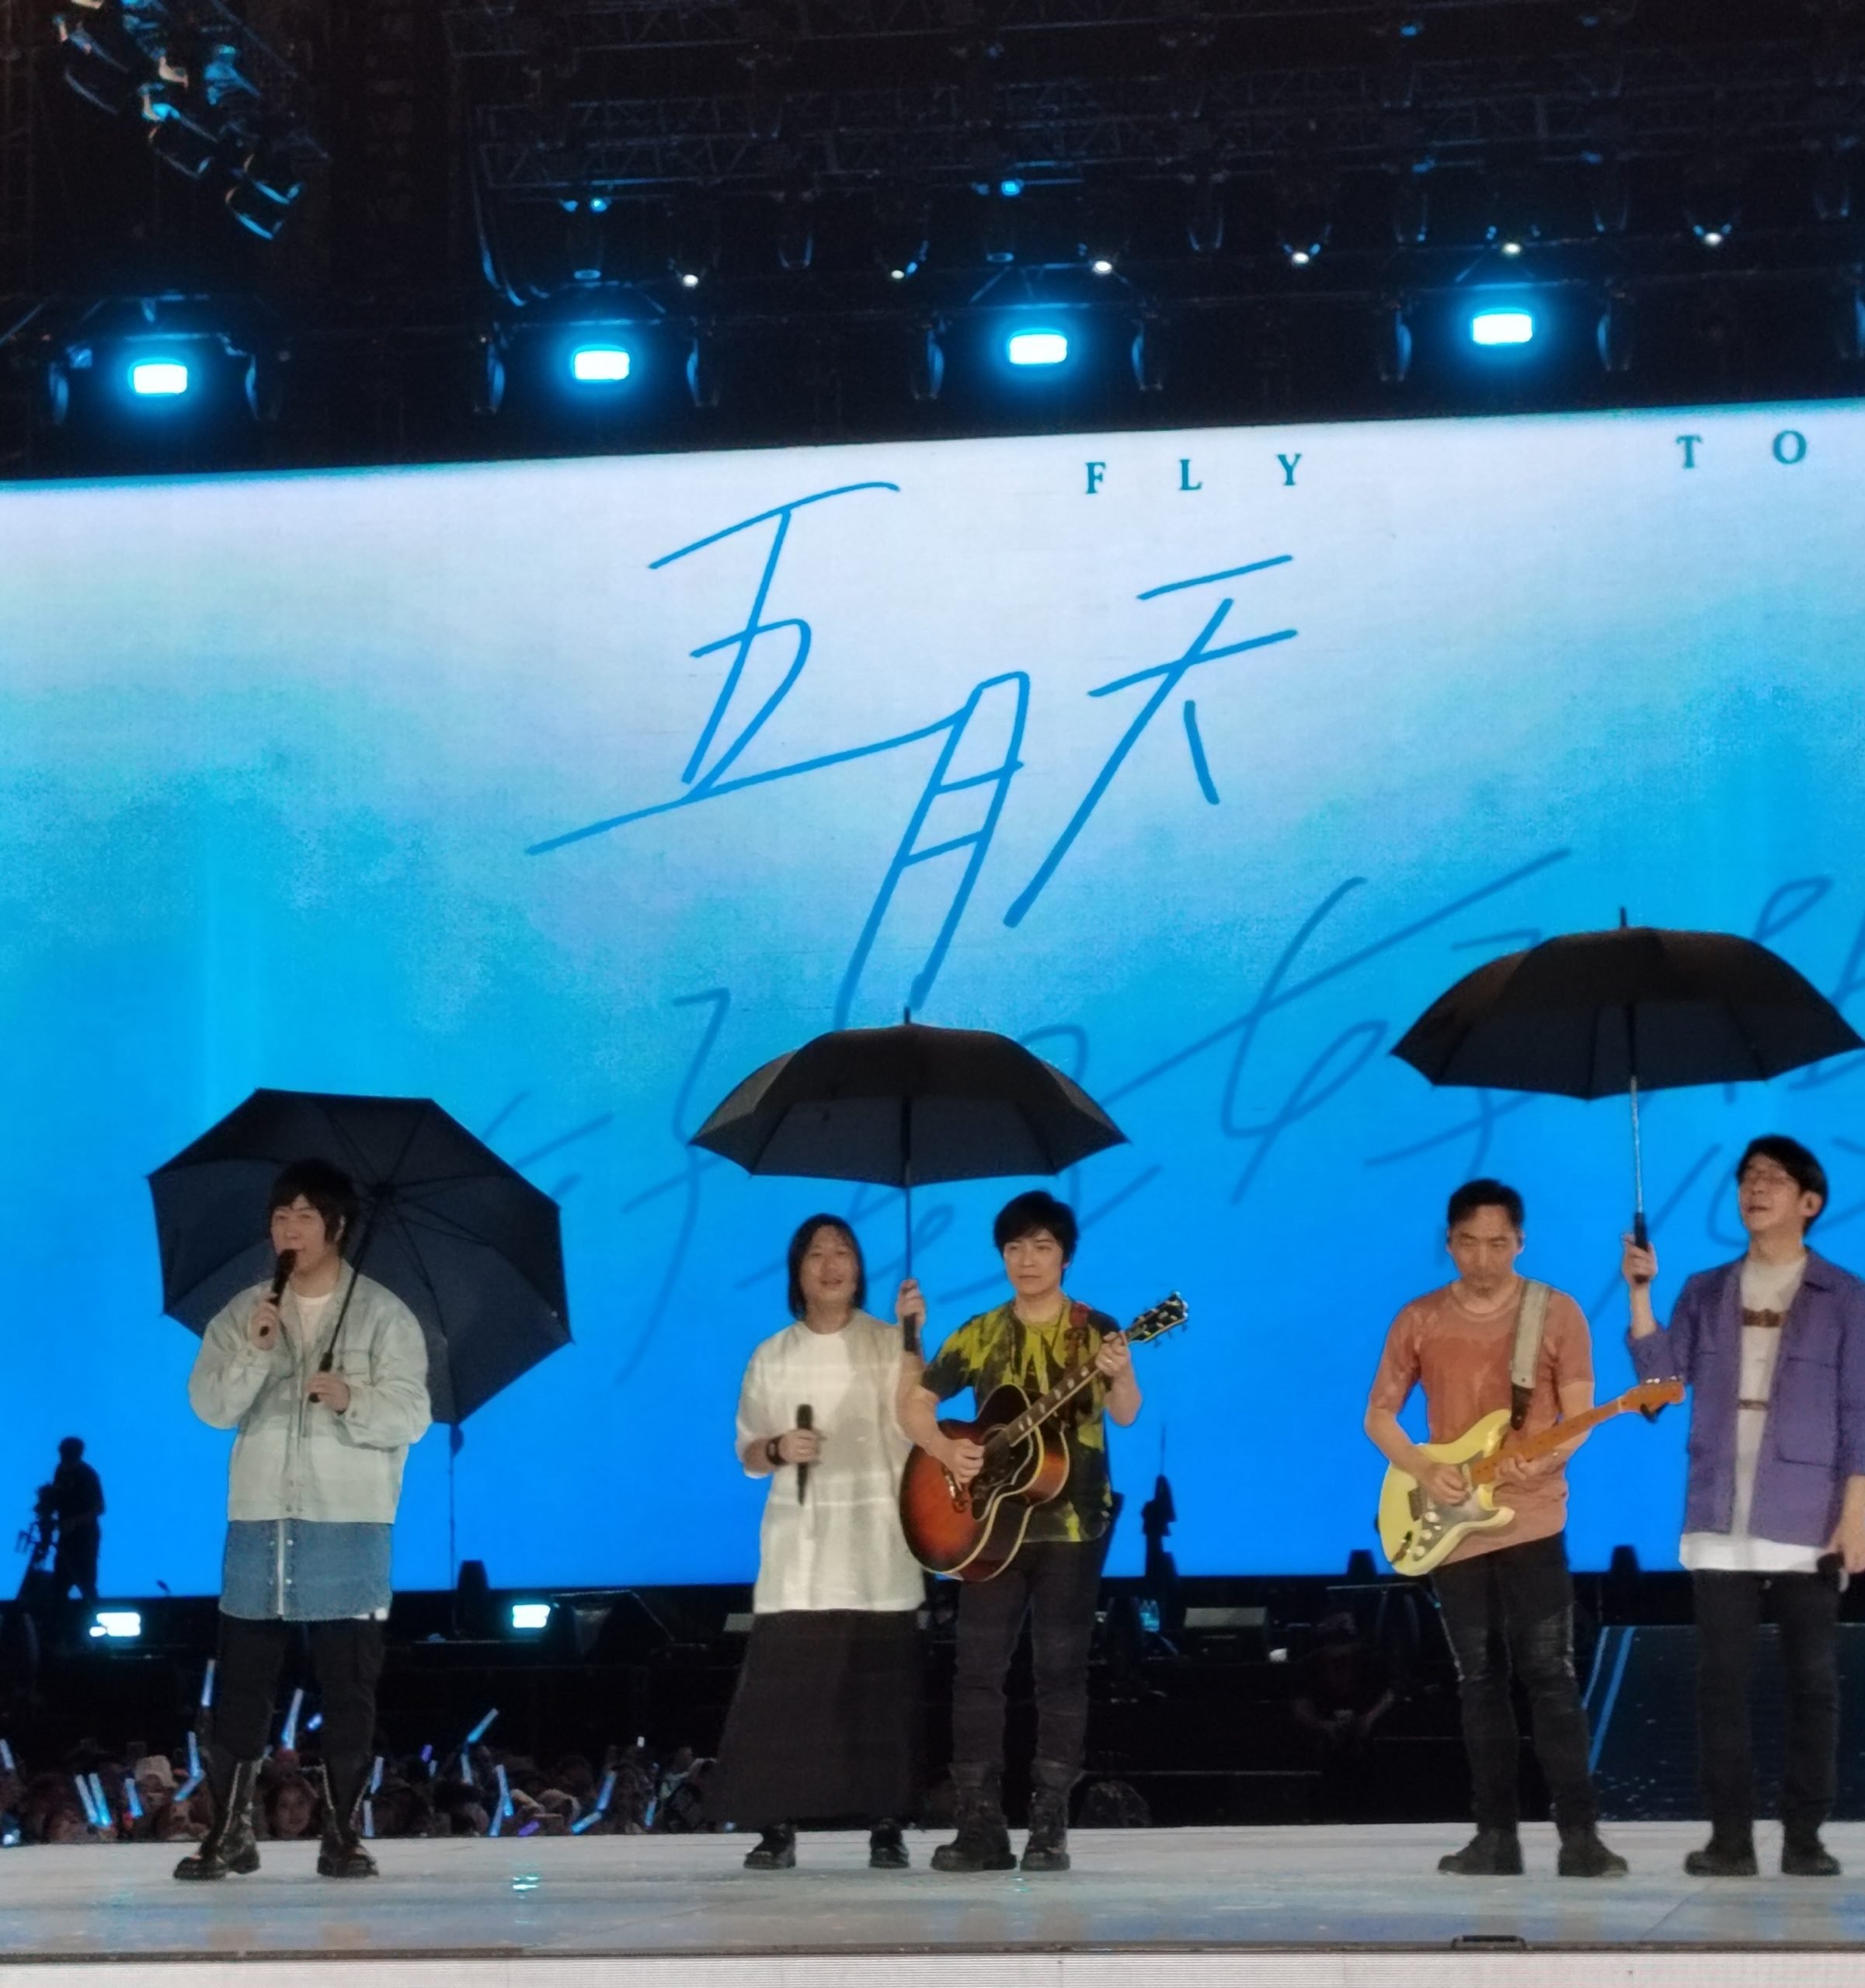 刘若英惊喜化身灯光师 五月天有雨同淋撑伞唱